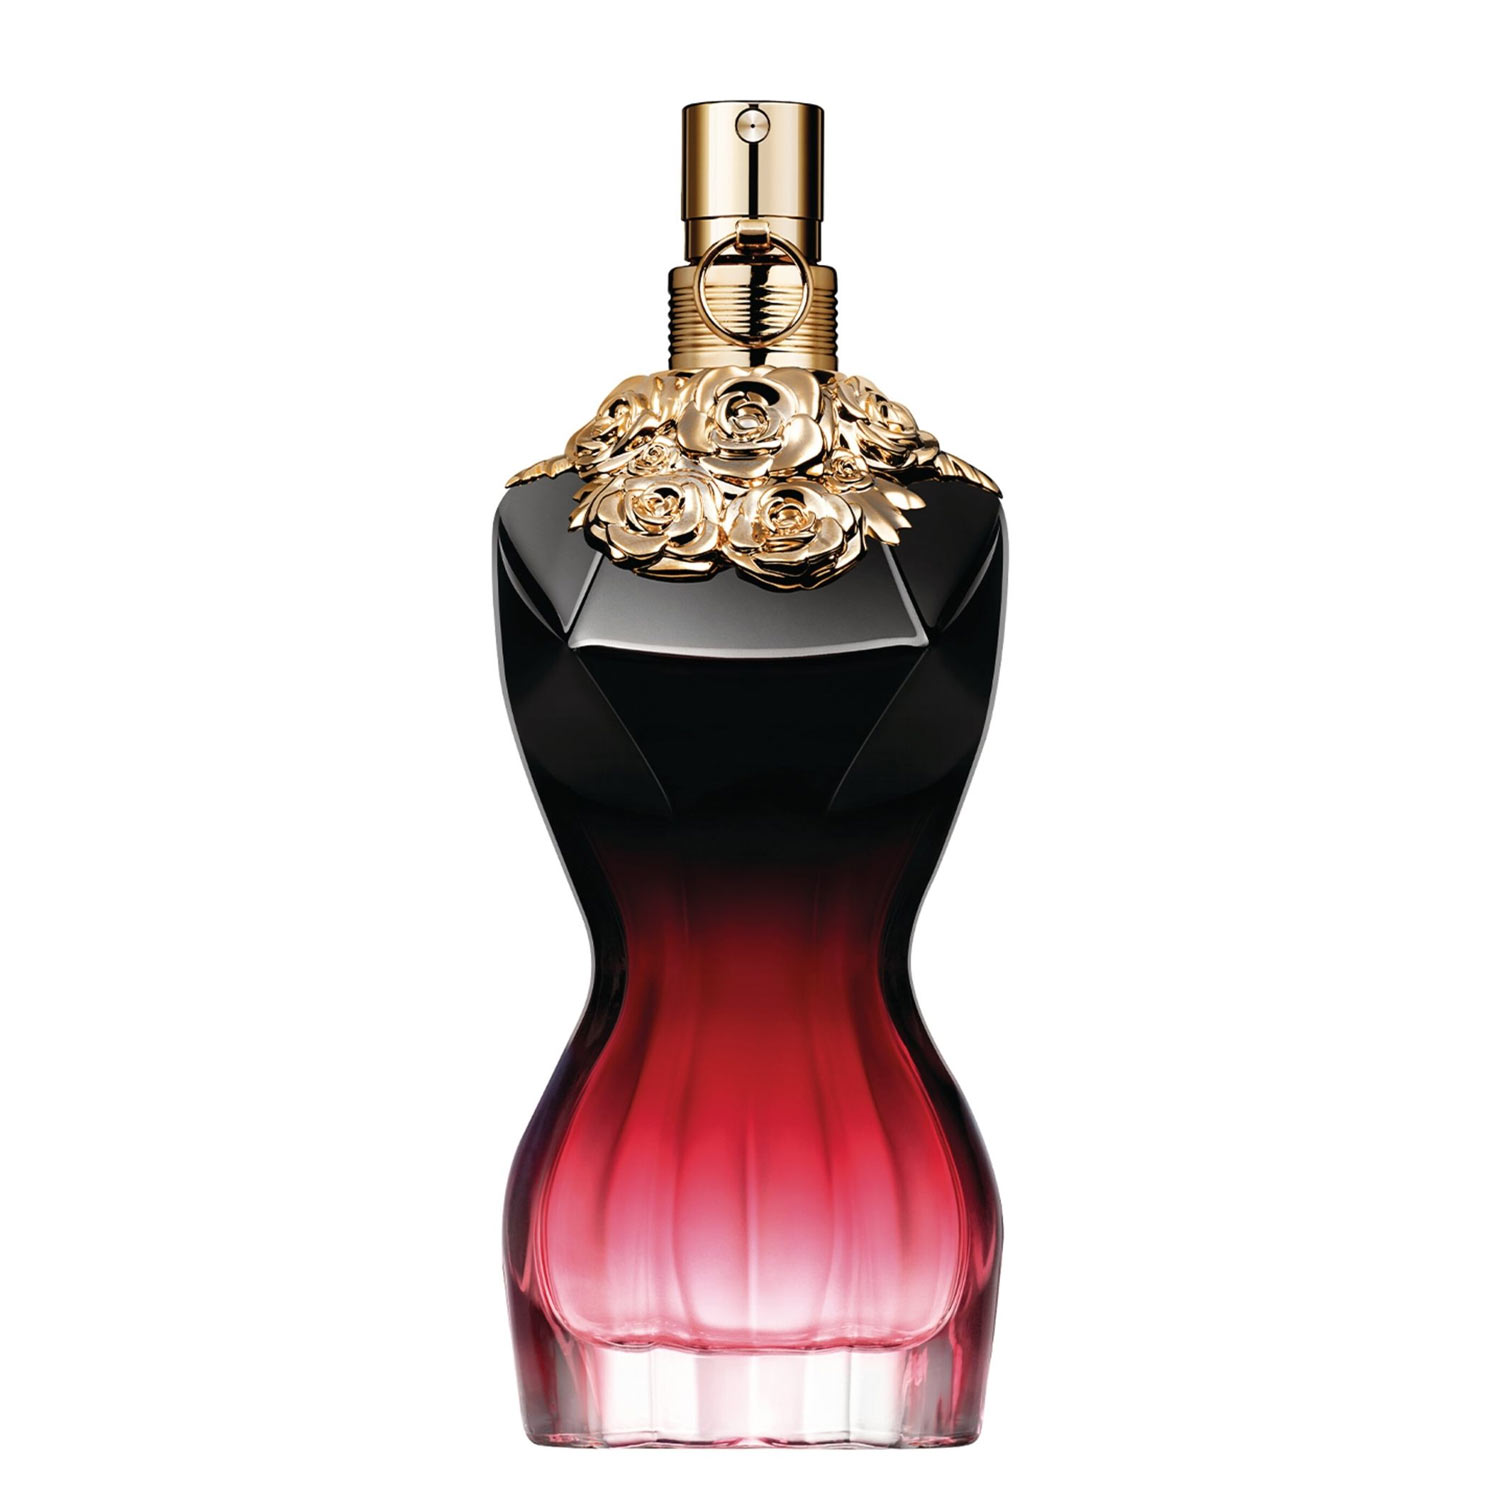 La Belle Le Parfum Jean Paul Gaultier Image